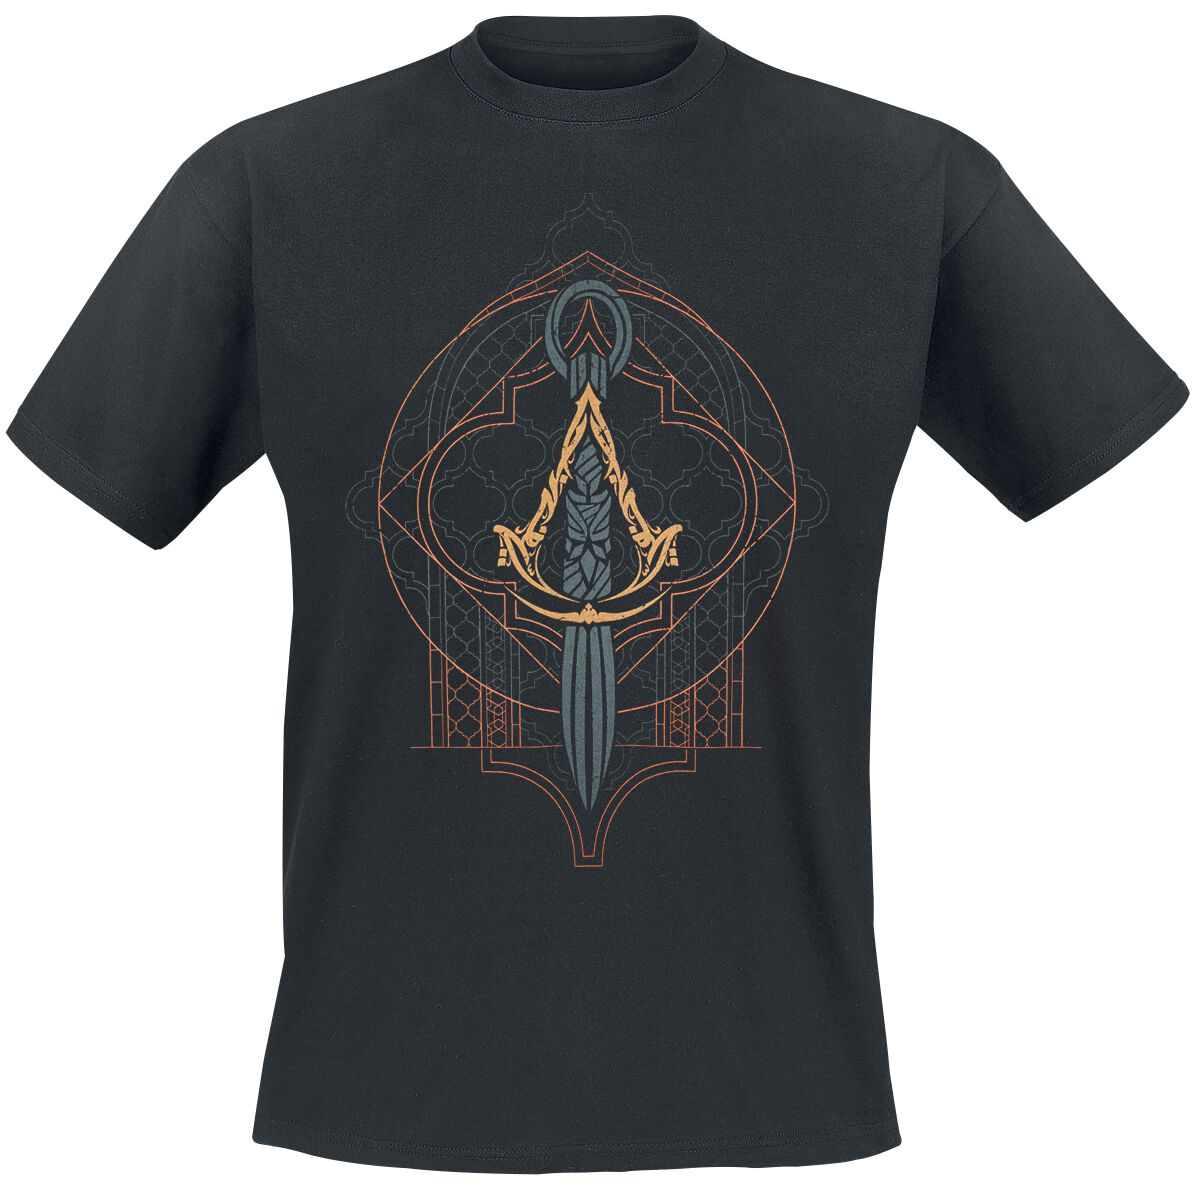 Assassin`s Creed - Gaming T-Shirt - Mirage - Emblem - S bis XXL - für Männer - Größe M - schwarz  - EMP exklusives Merchandise!